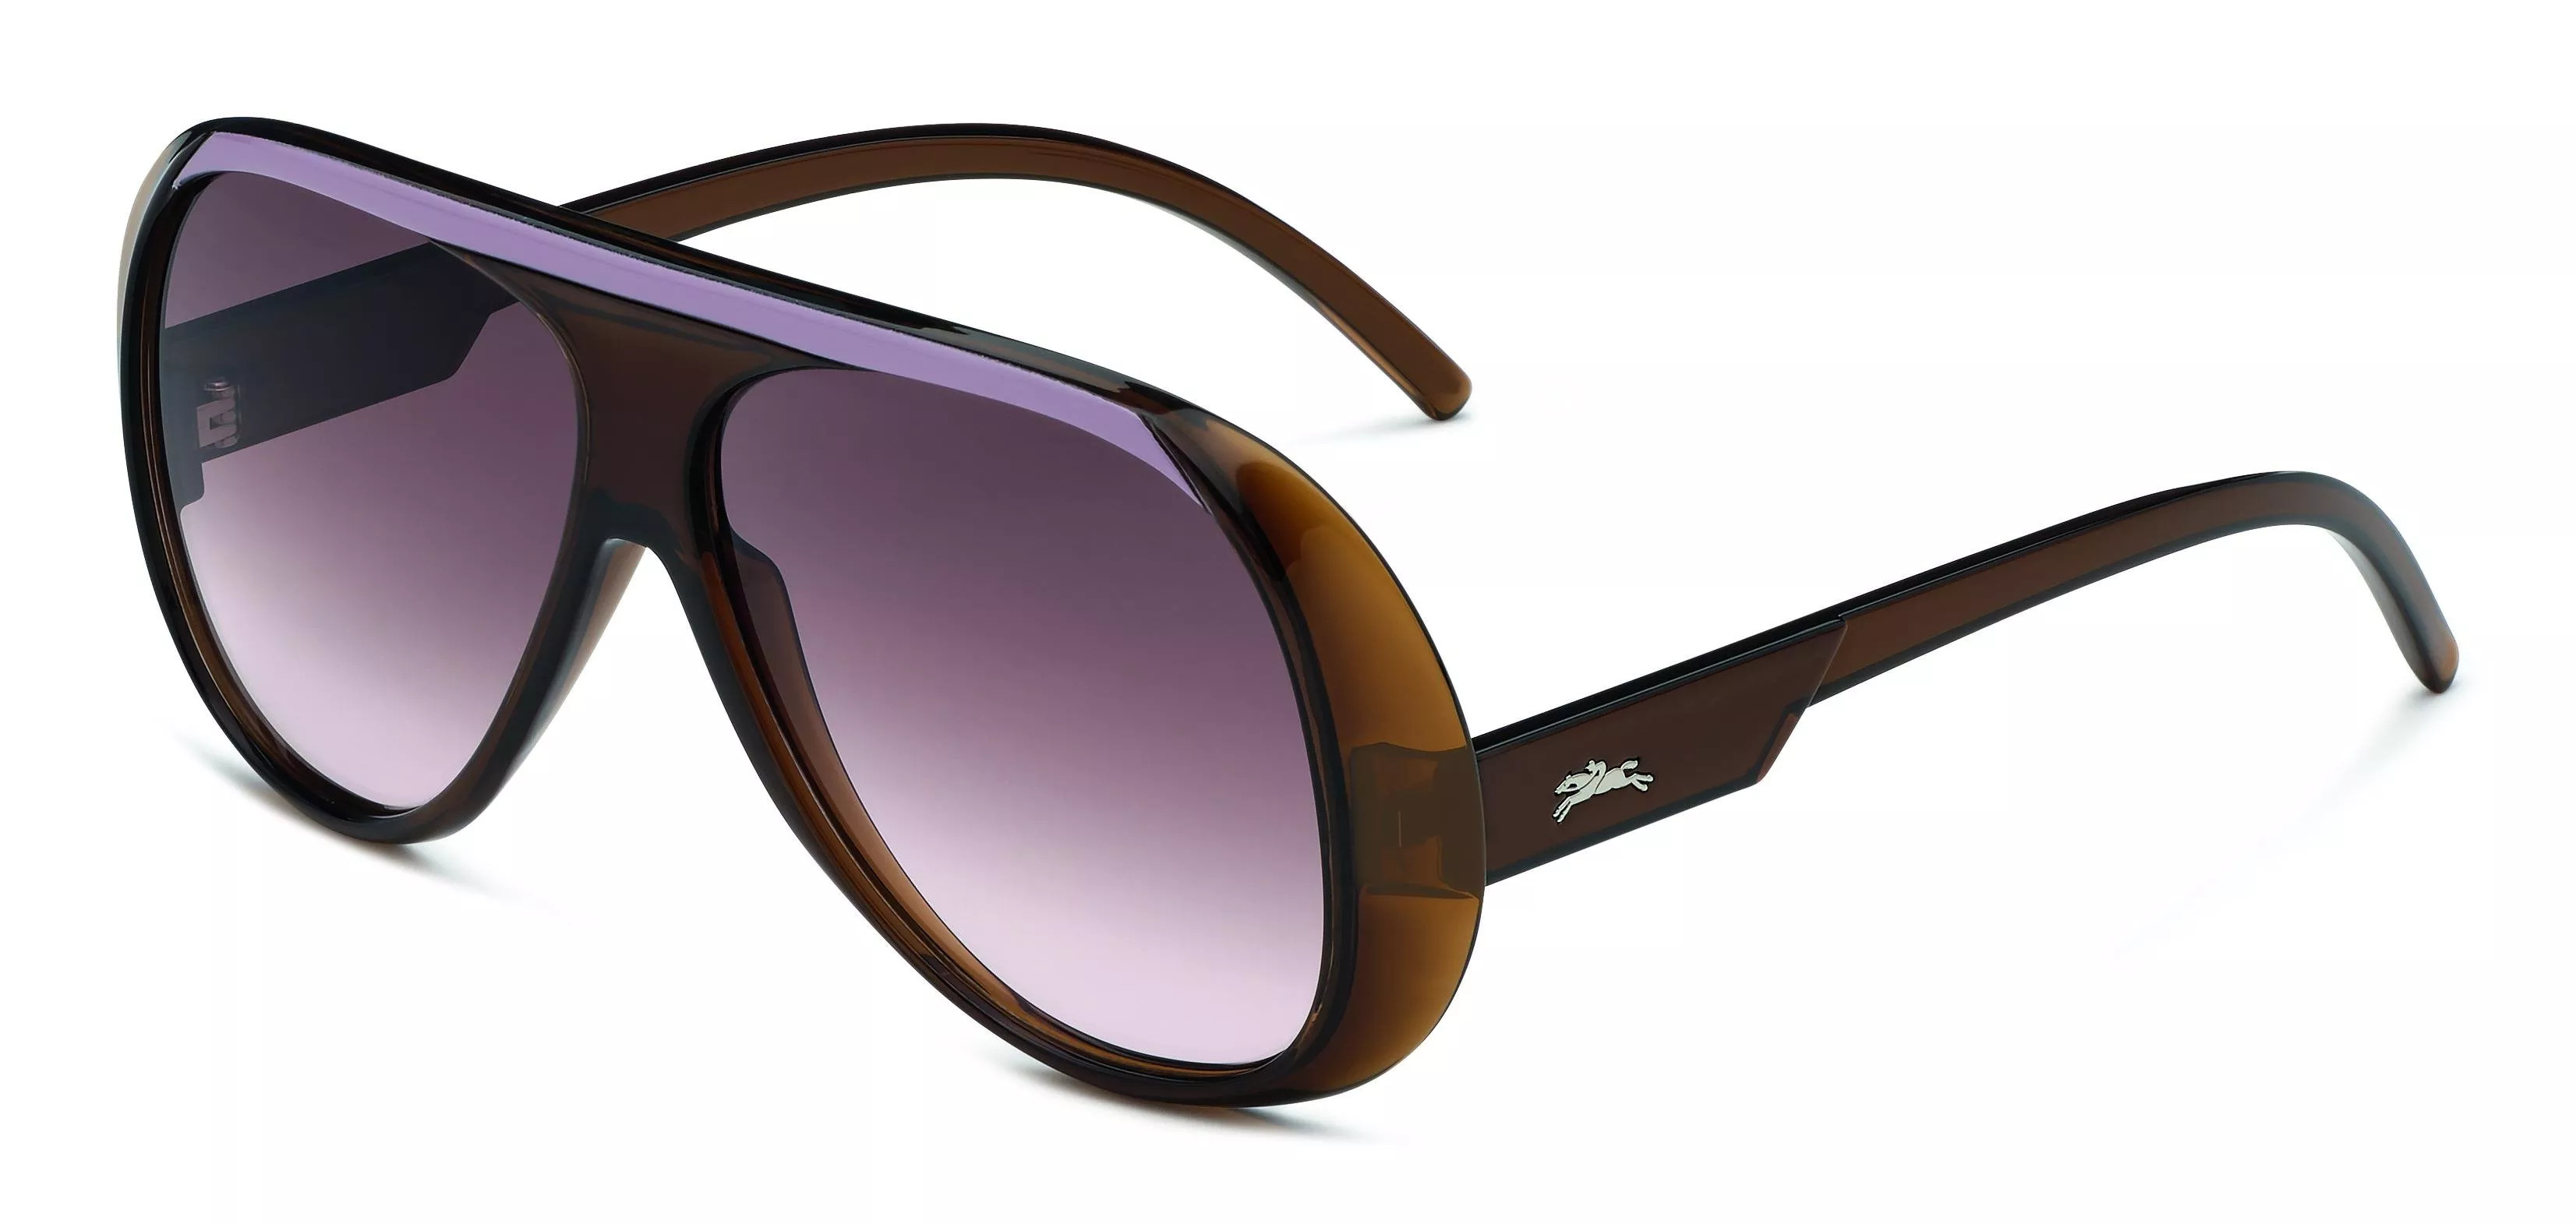 علامة Longchamp تطلق تصميمين جديدين للنظارات لربيع 2020